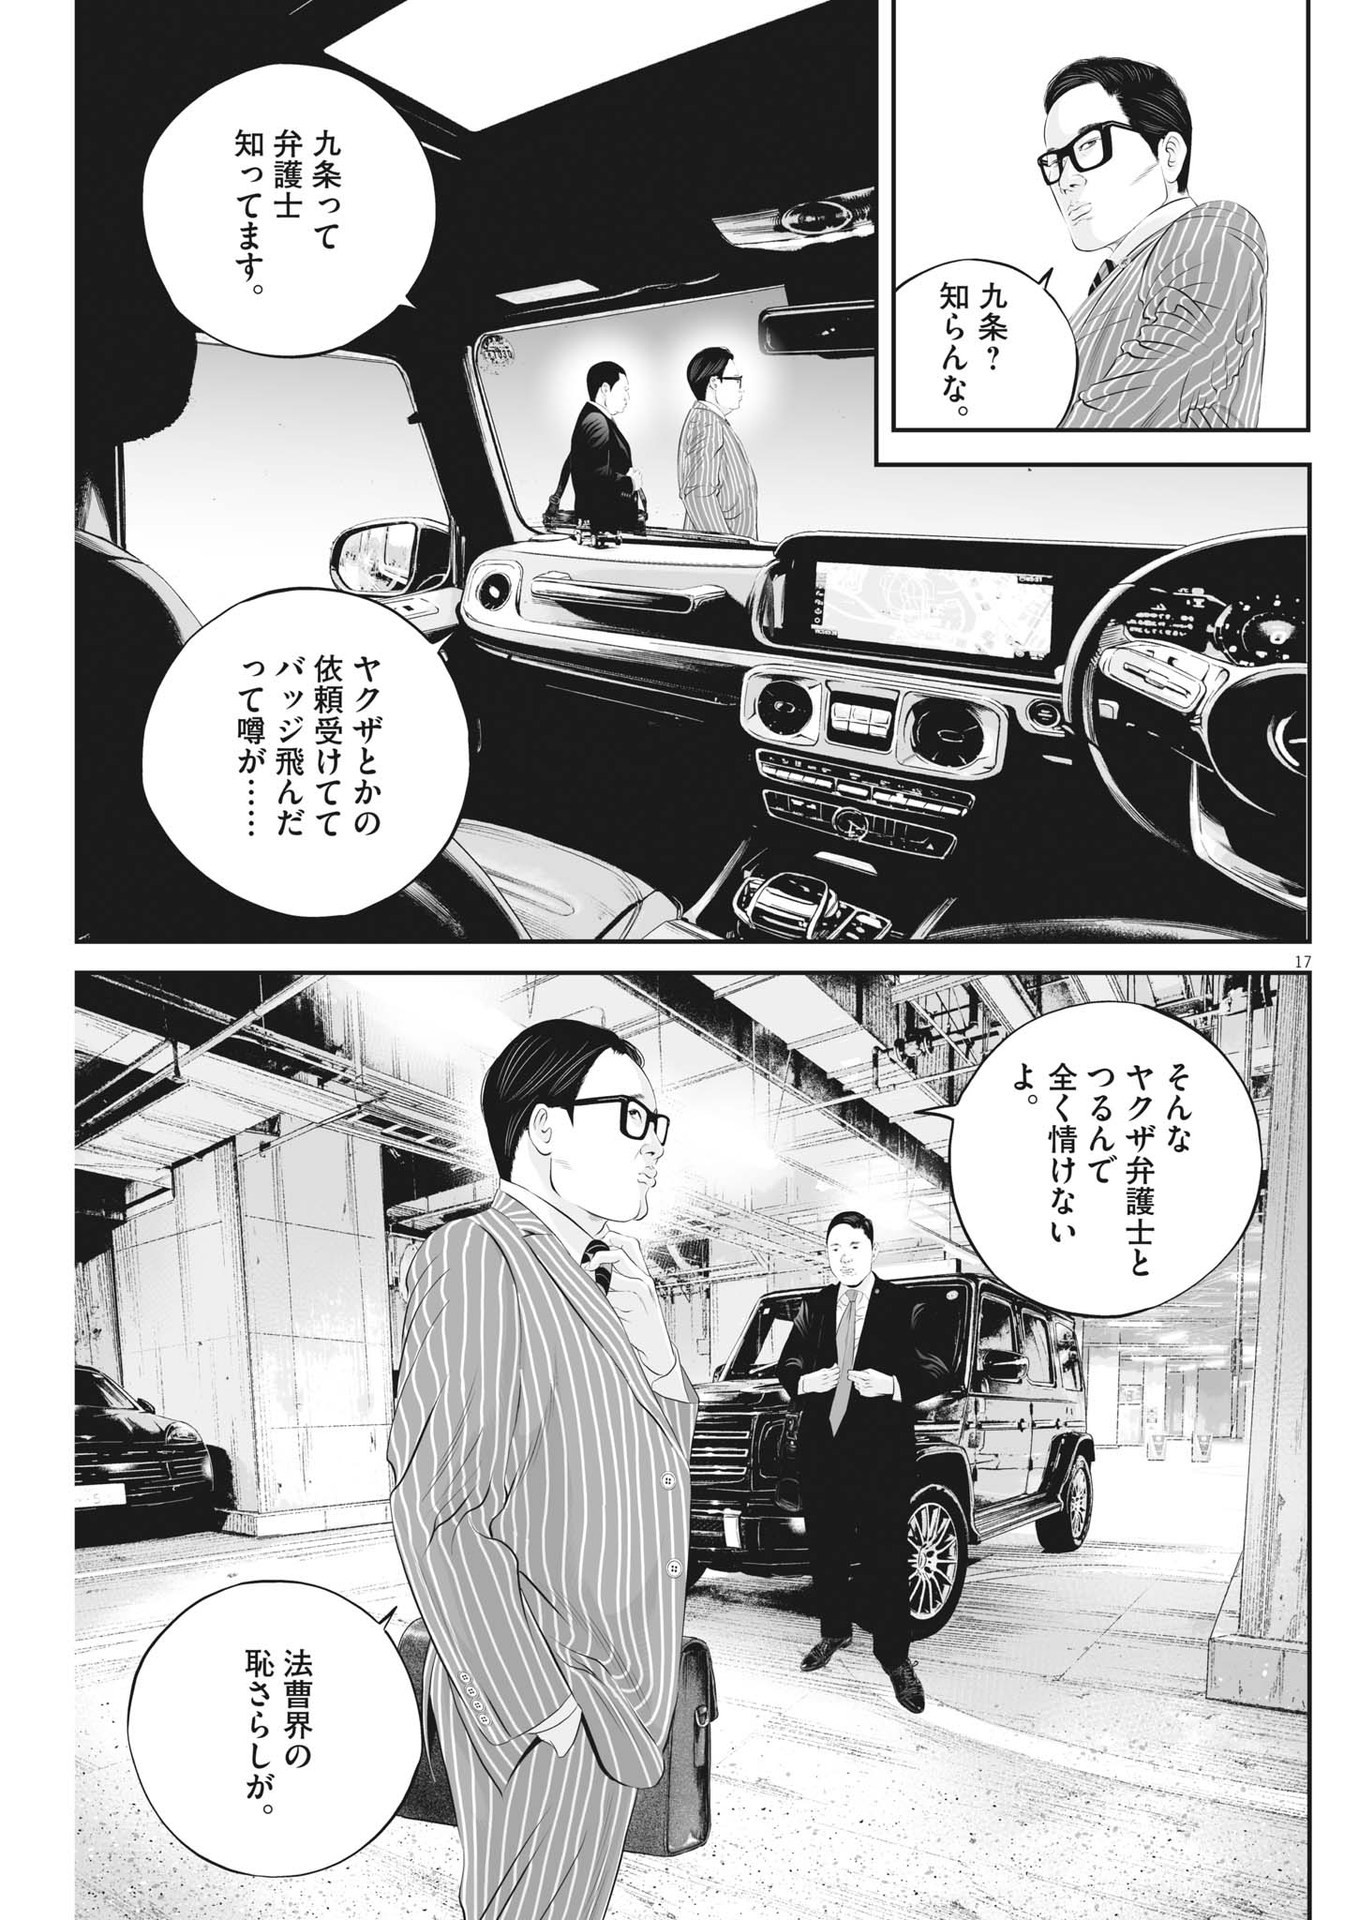 Kujou no Taizai - Chapter 96 - Page 17